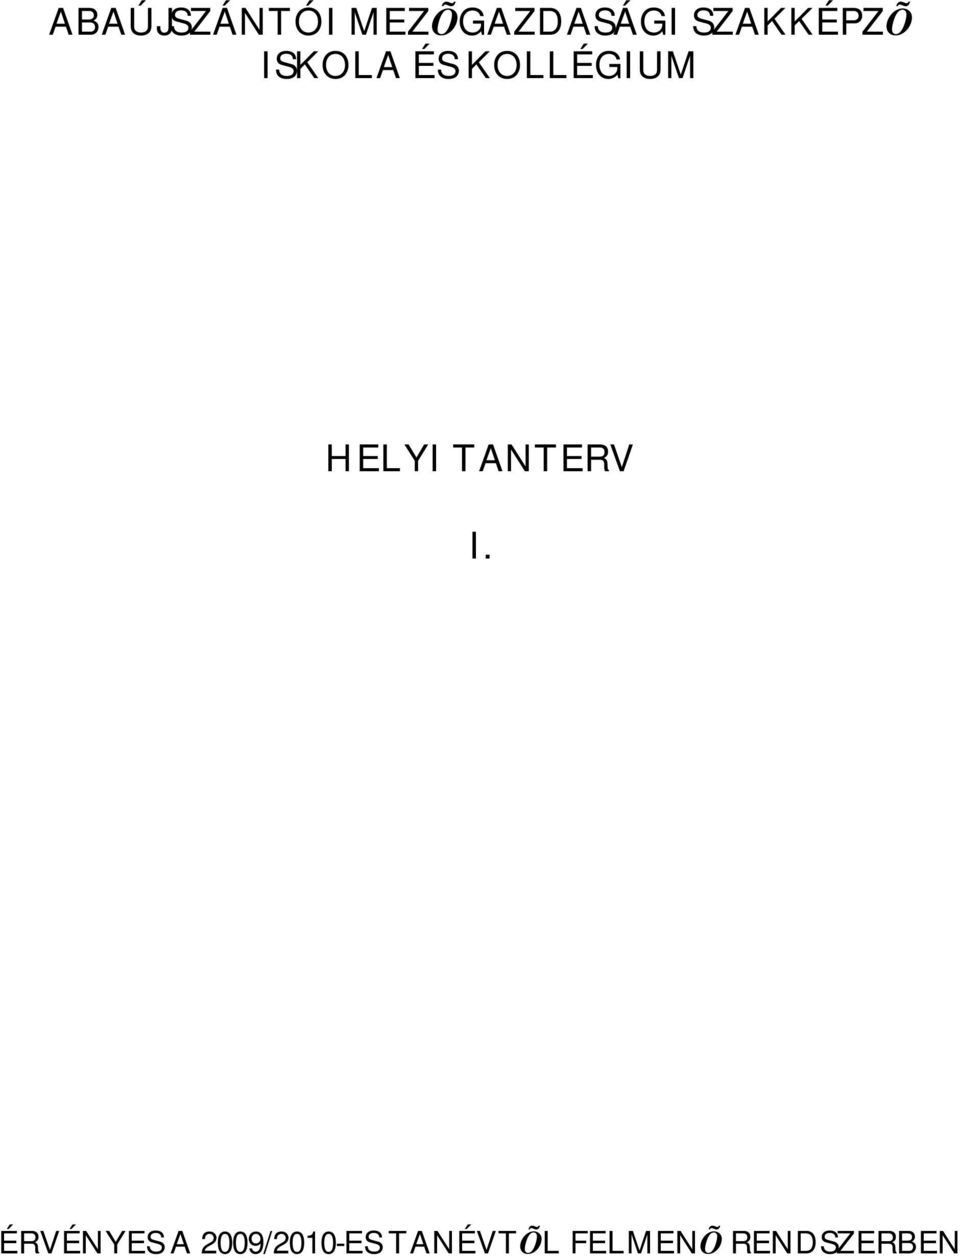 HELYI TANTERV I.